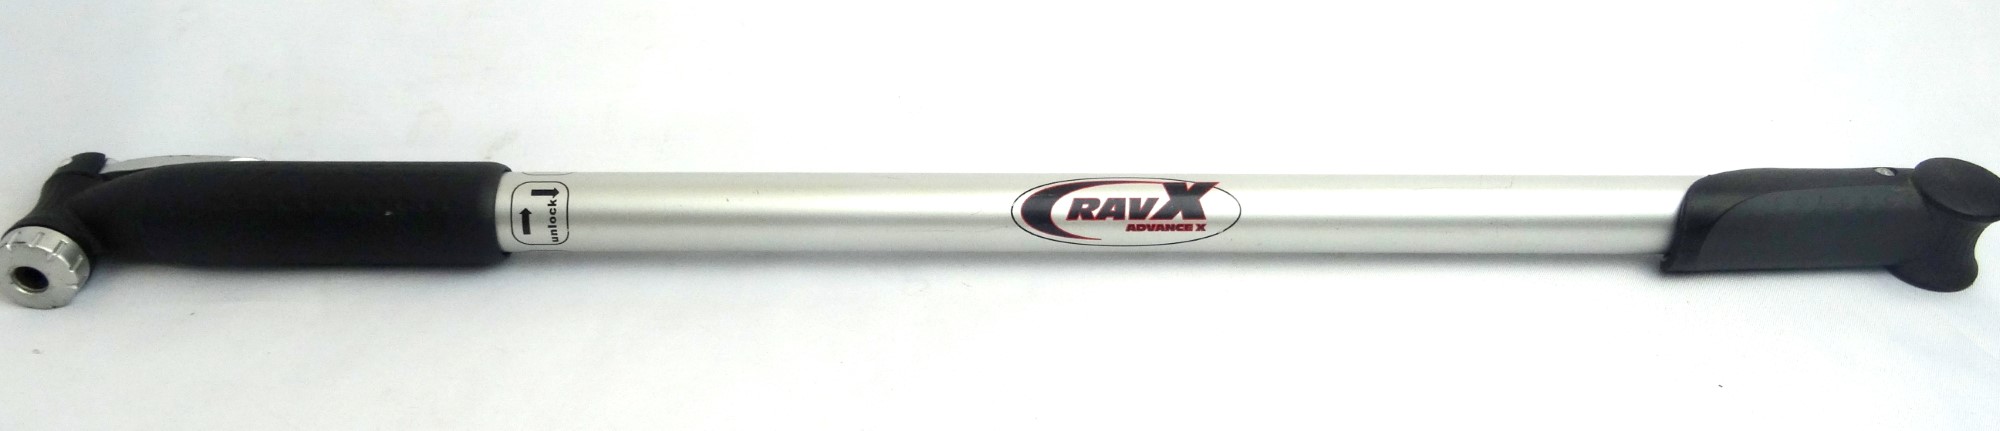 ravx bike pump